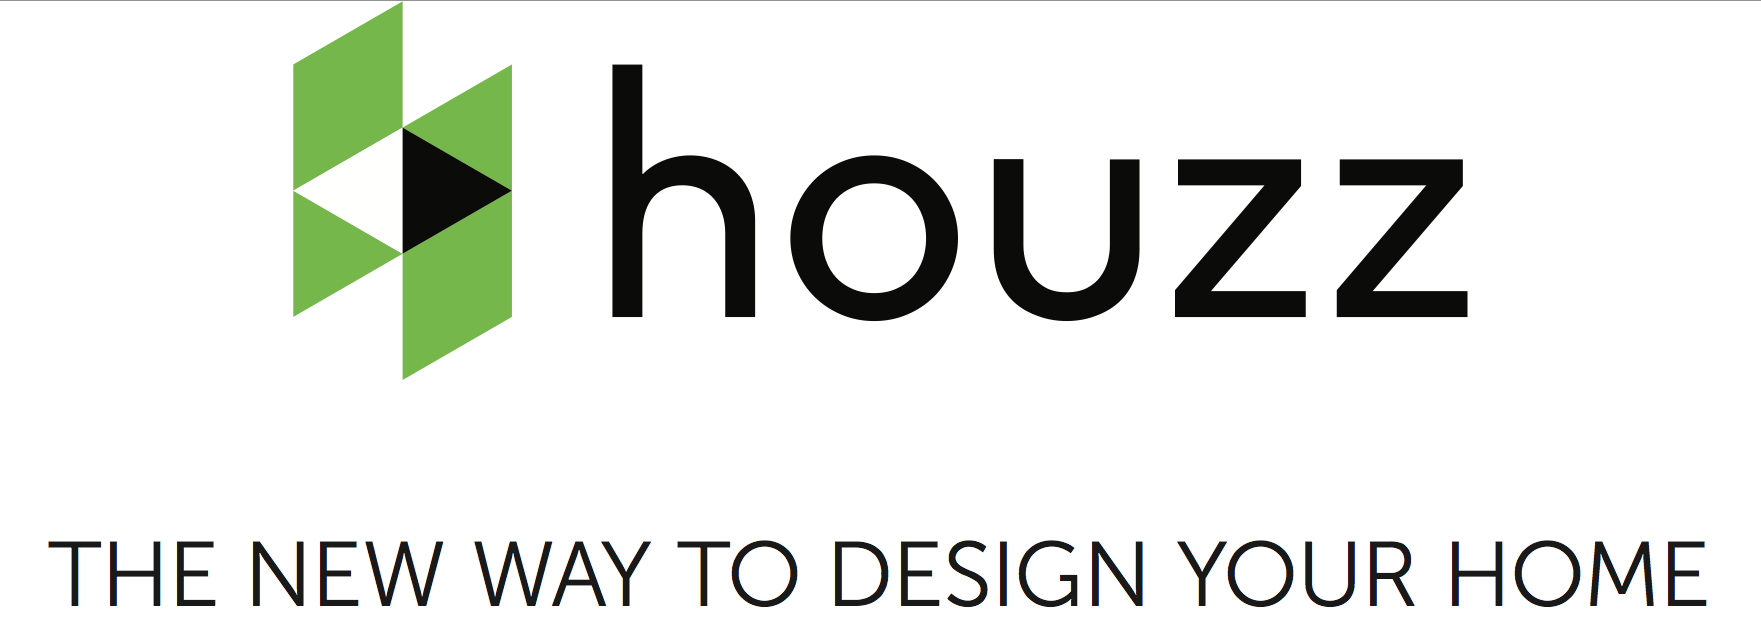 Houzz raising $400 million at $4 billion valuation